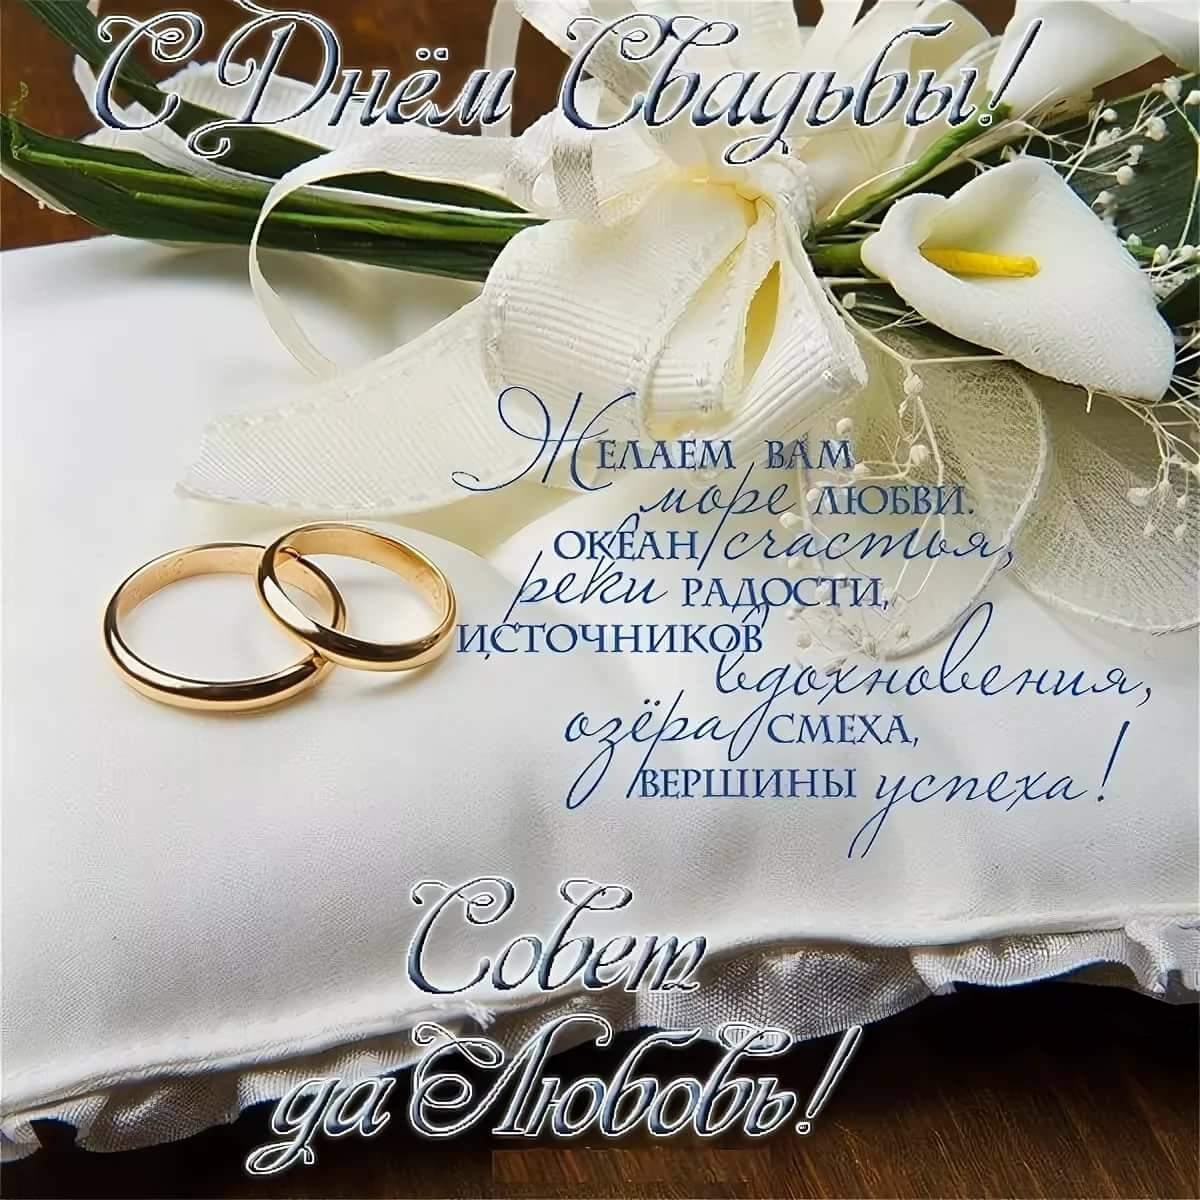 Красивые поздравления С днем бракосочетания (50 картинок)